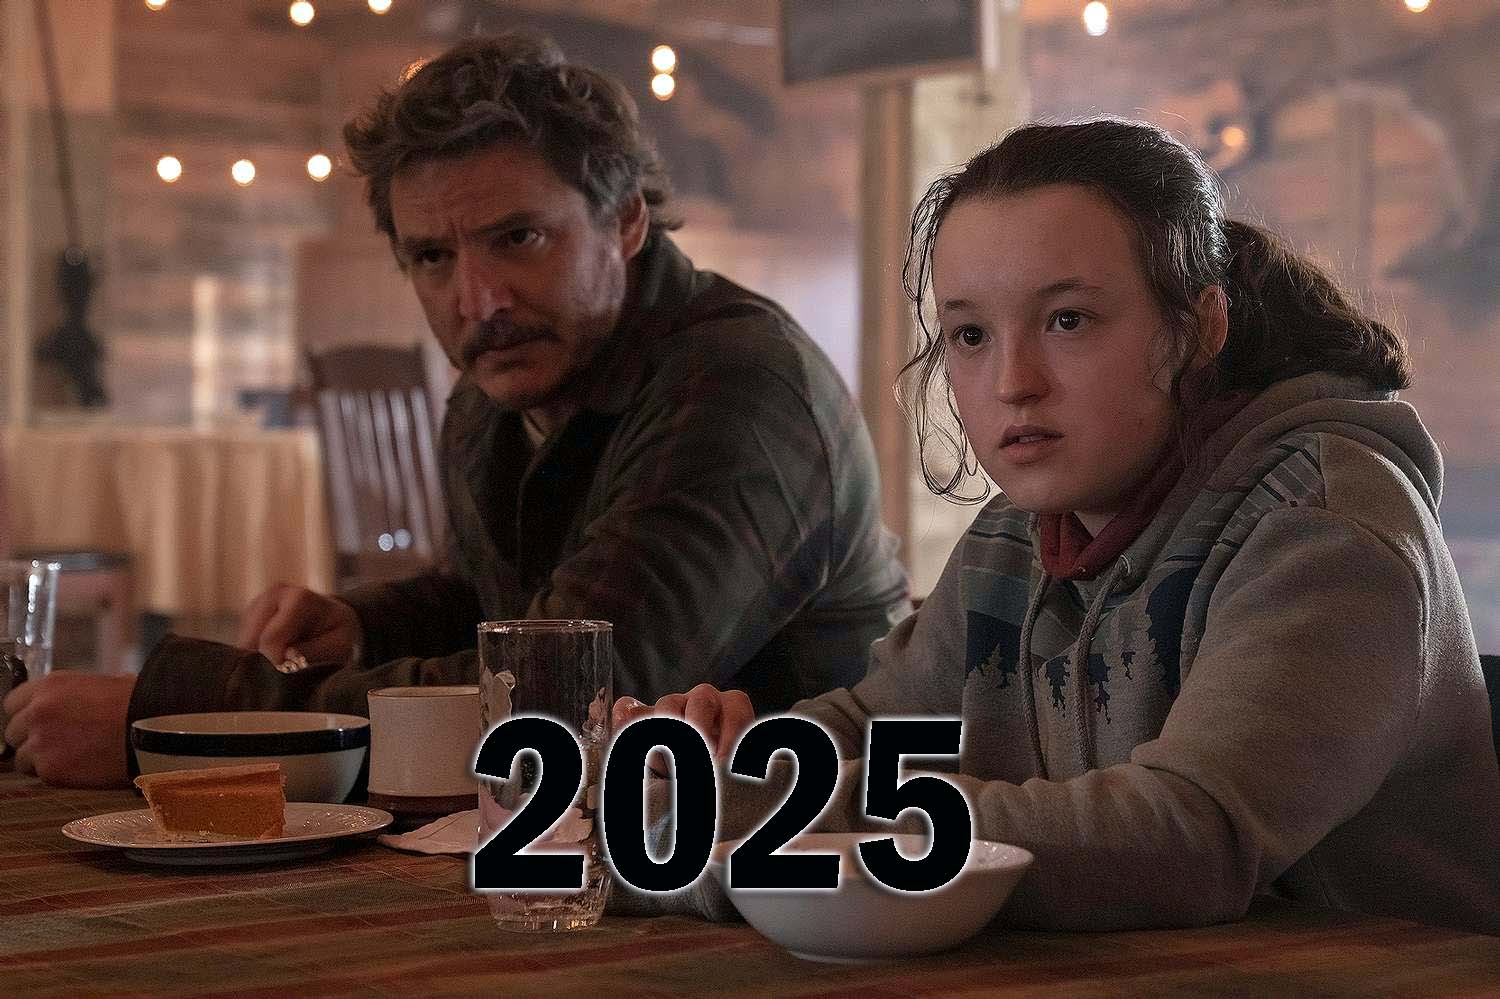 The Last of Us Temporada 2 llegará en 2025 confirma HBO